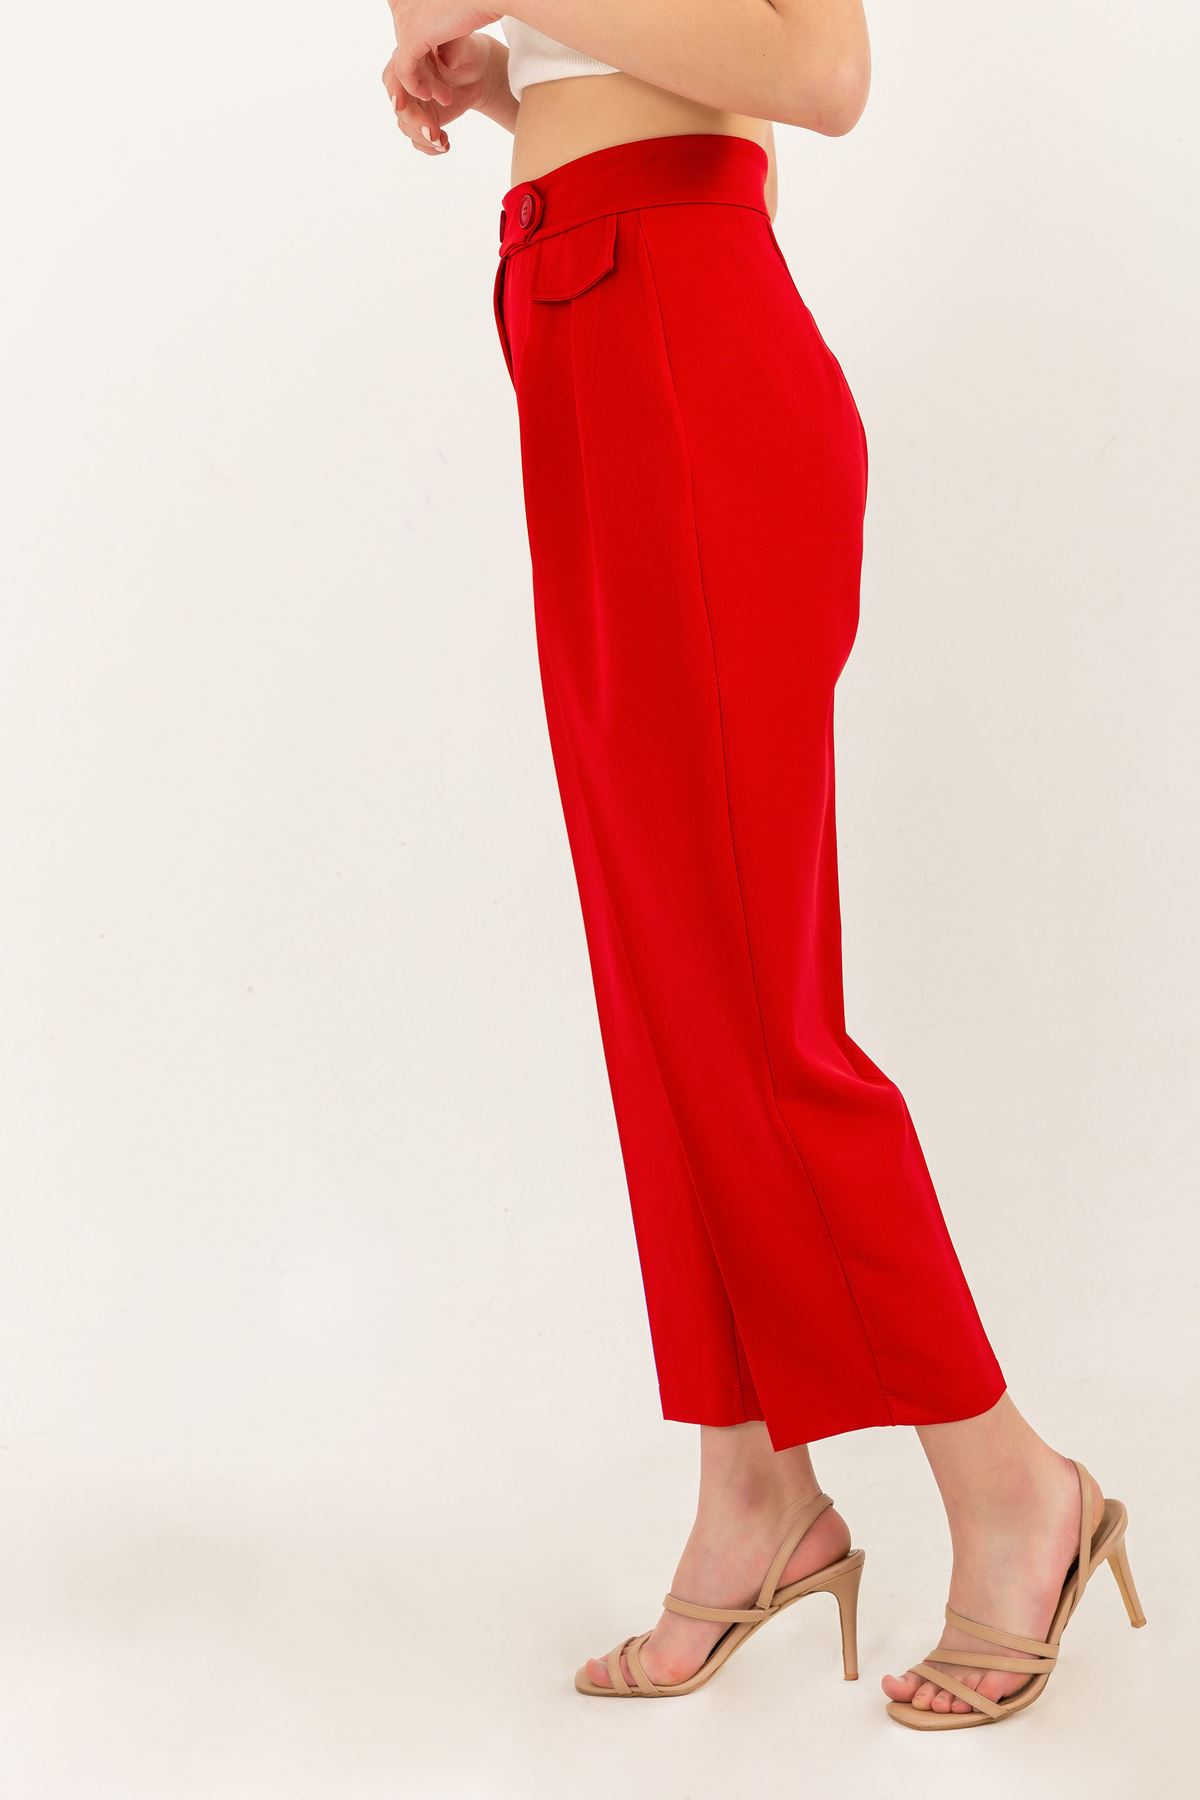 Atlas Kumaş Bilek Boy Havuç Kesim Kadın Pantolon-Kırmızı